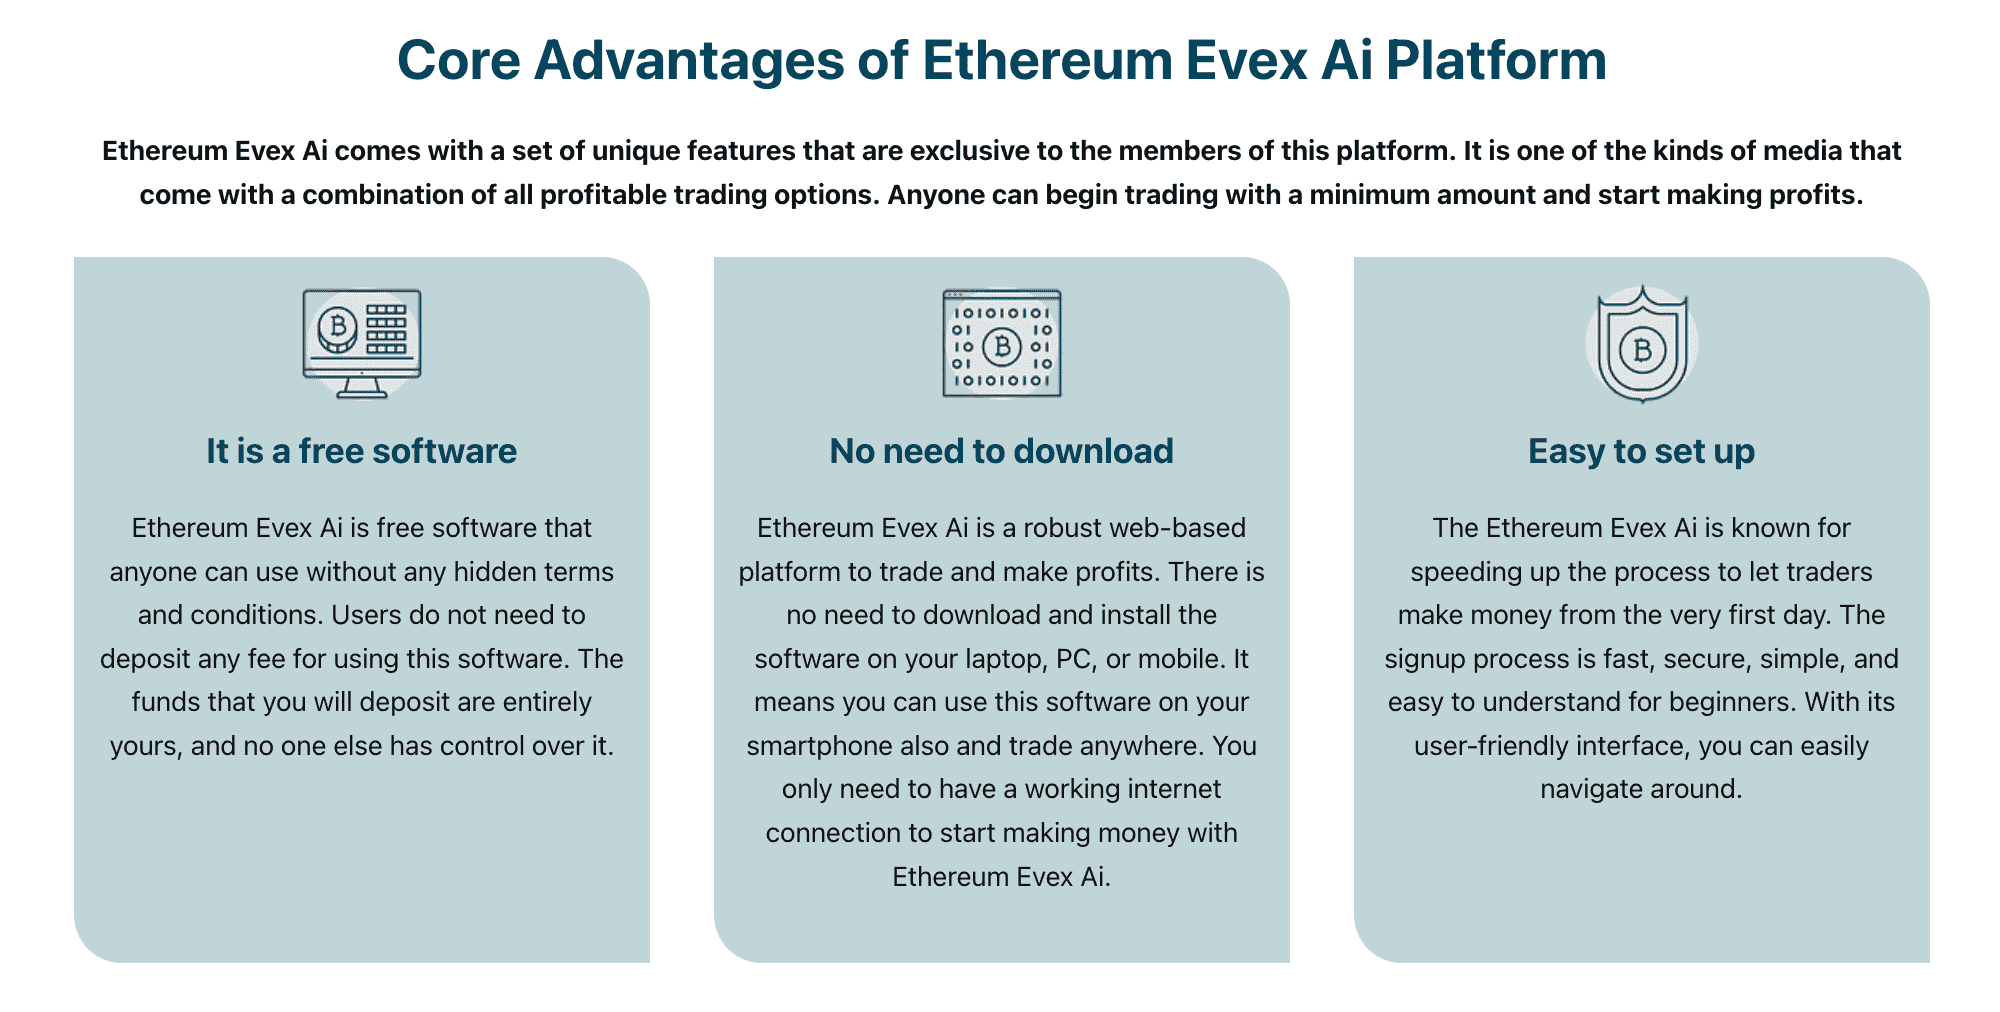 Kernefordele ved Ethereum Evex Ai Platform  